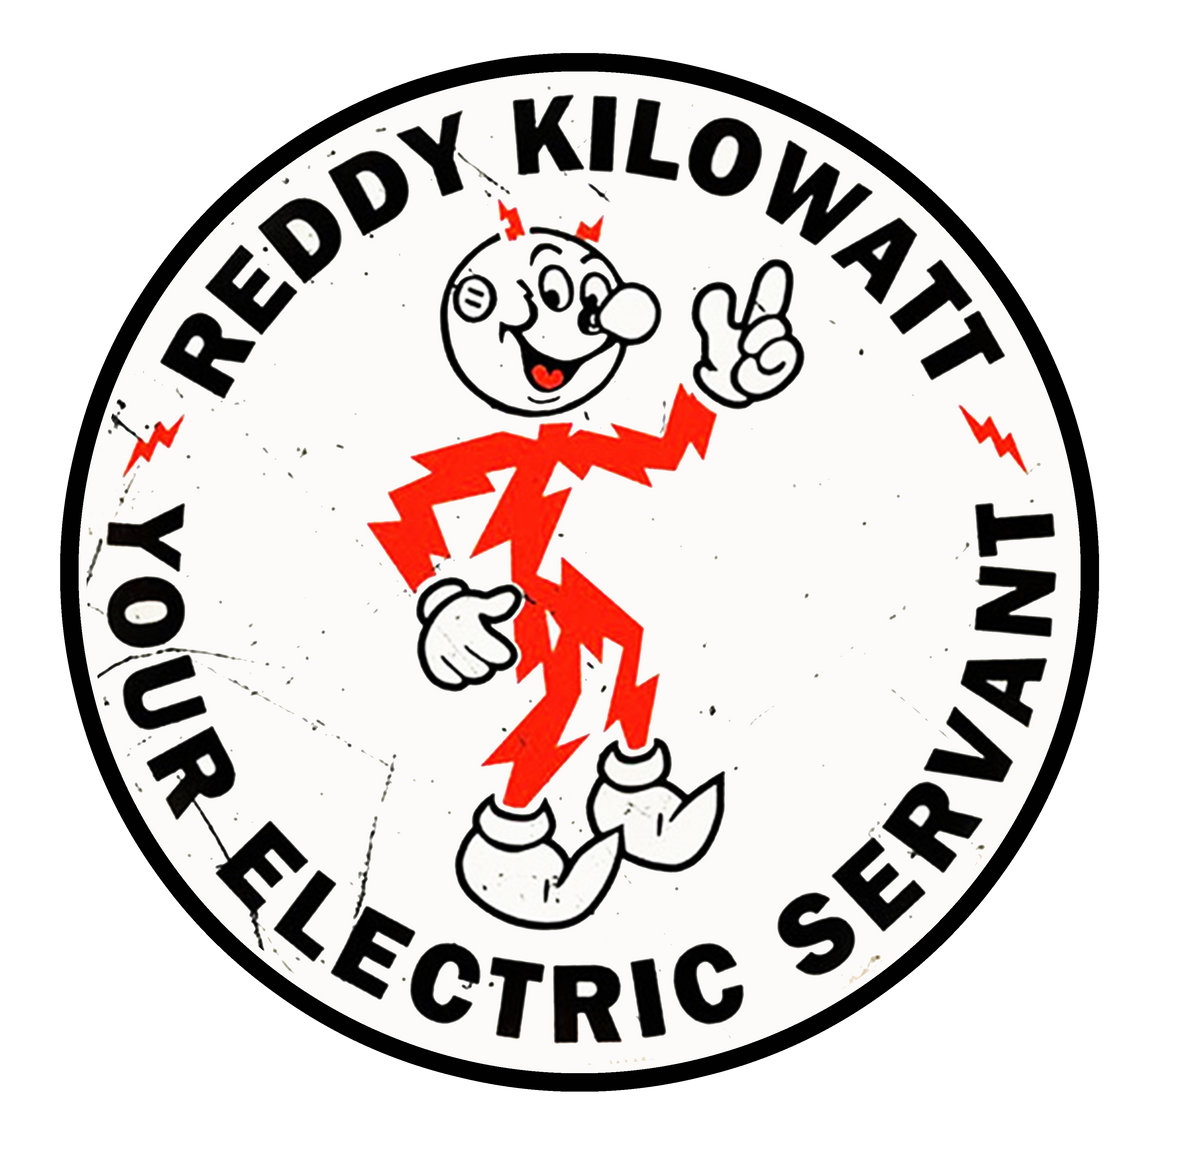 Reddy Kilowatt Circle Sticker